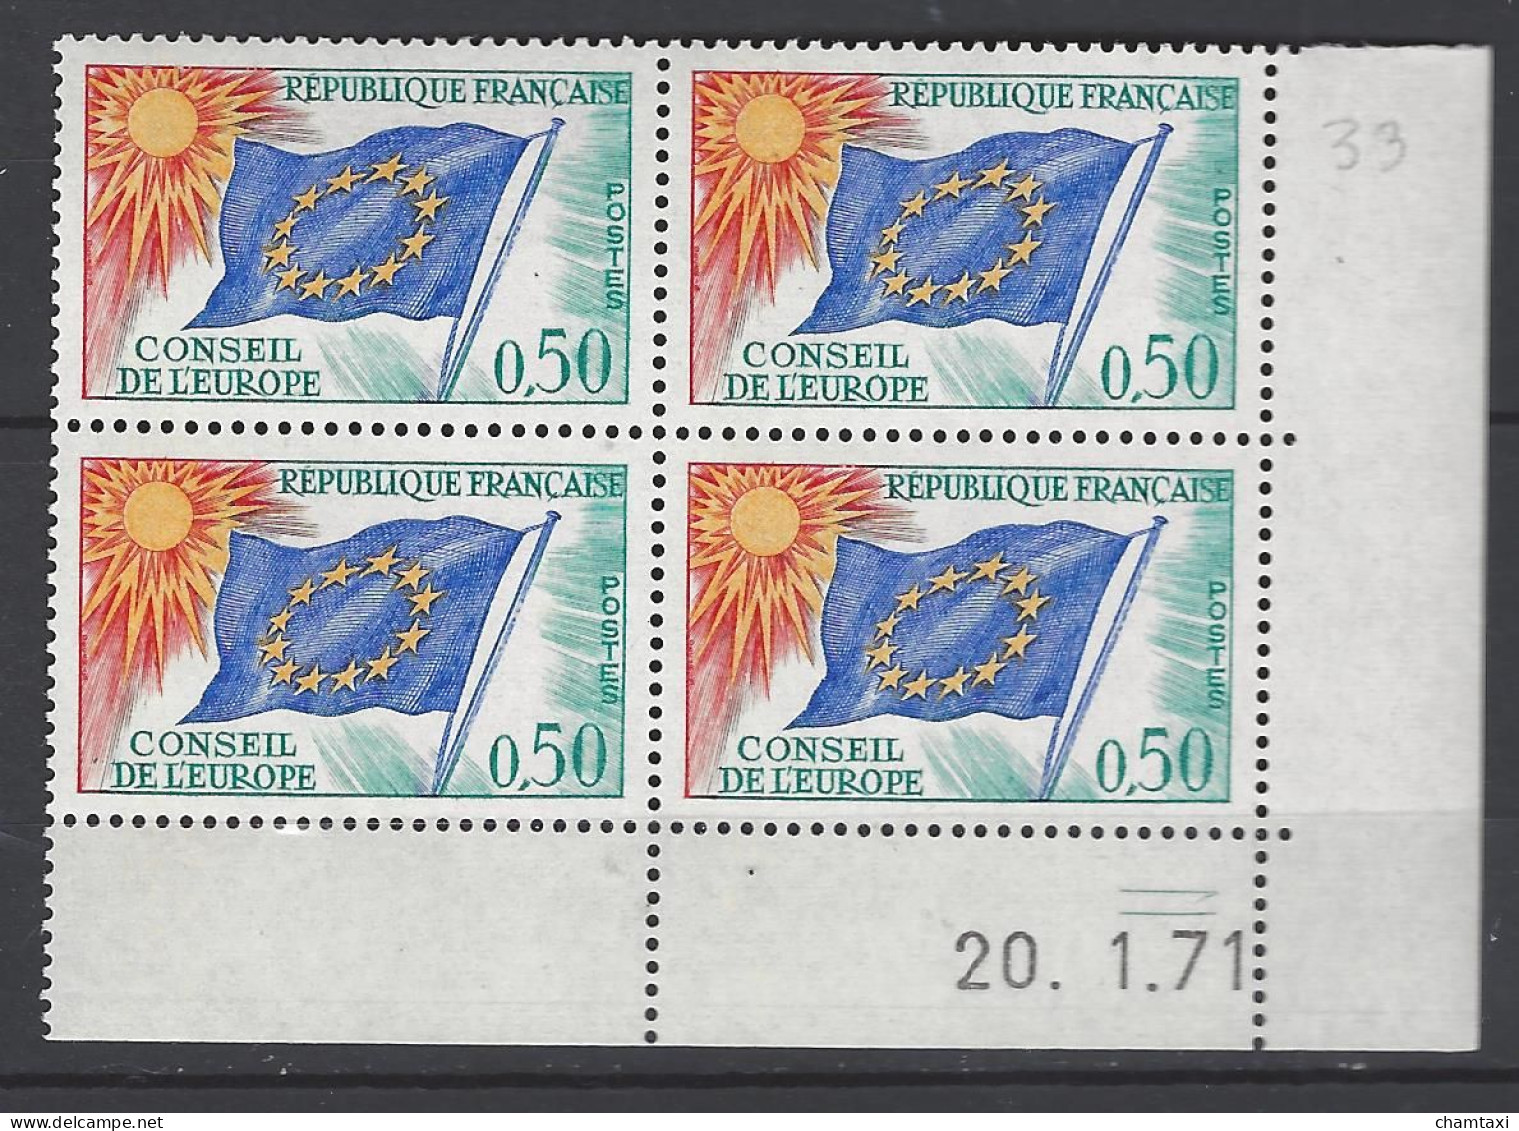 CD 33 FRANCE 1971 TIMBRE SERVICE CONSEIL DE L EUROPE DRAPEAU TYPE 1958 1959  COIN DATE 33 : 20 / 1 / 71 - Officials